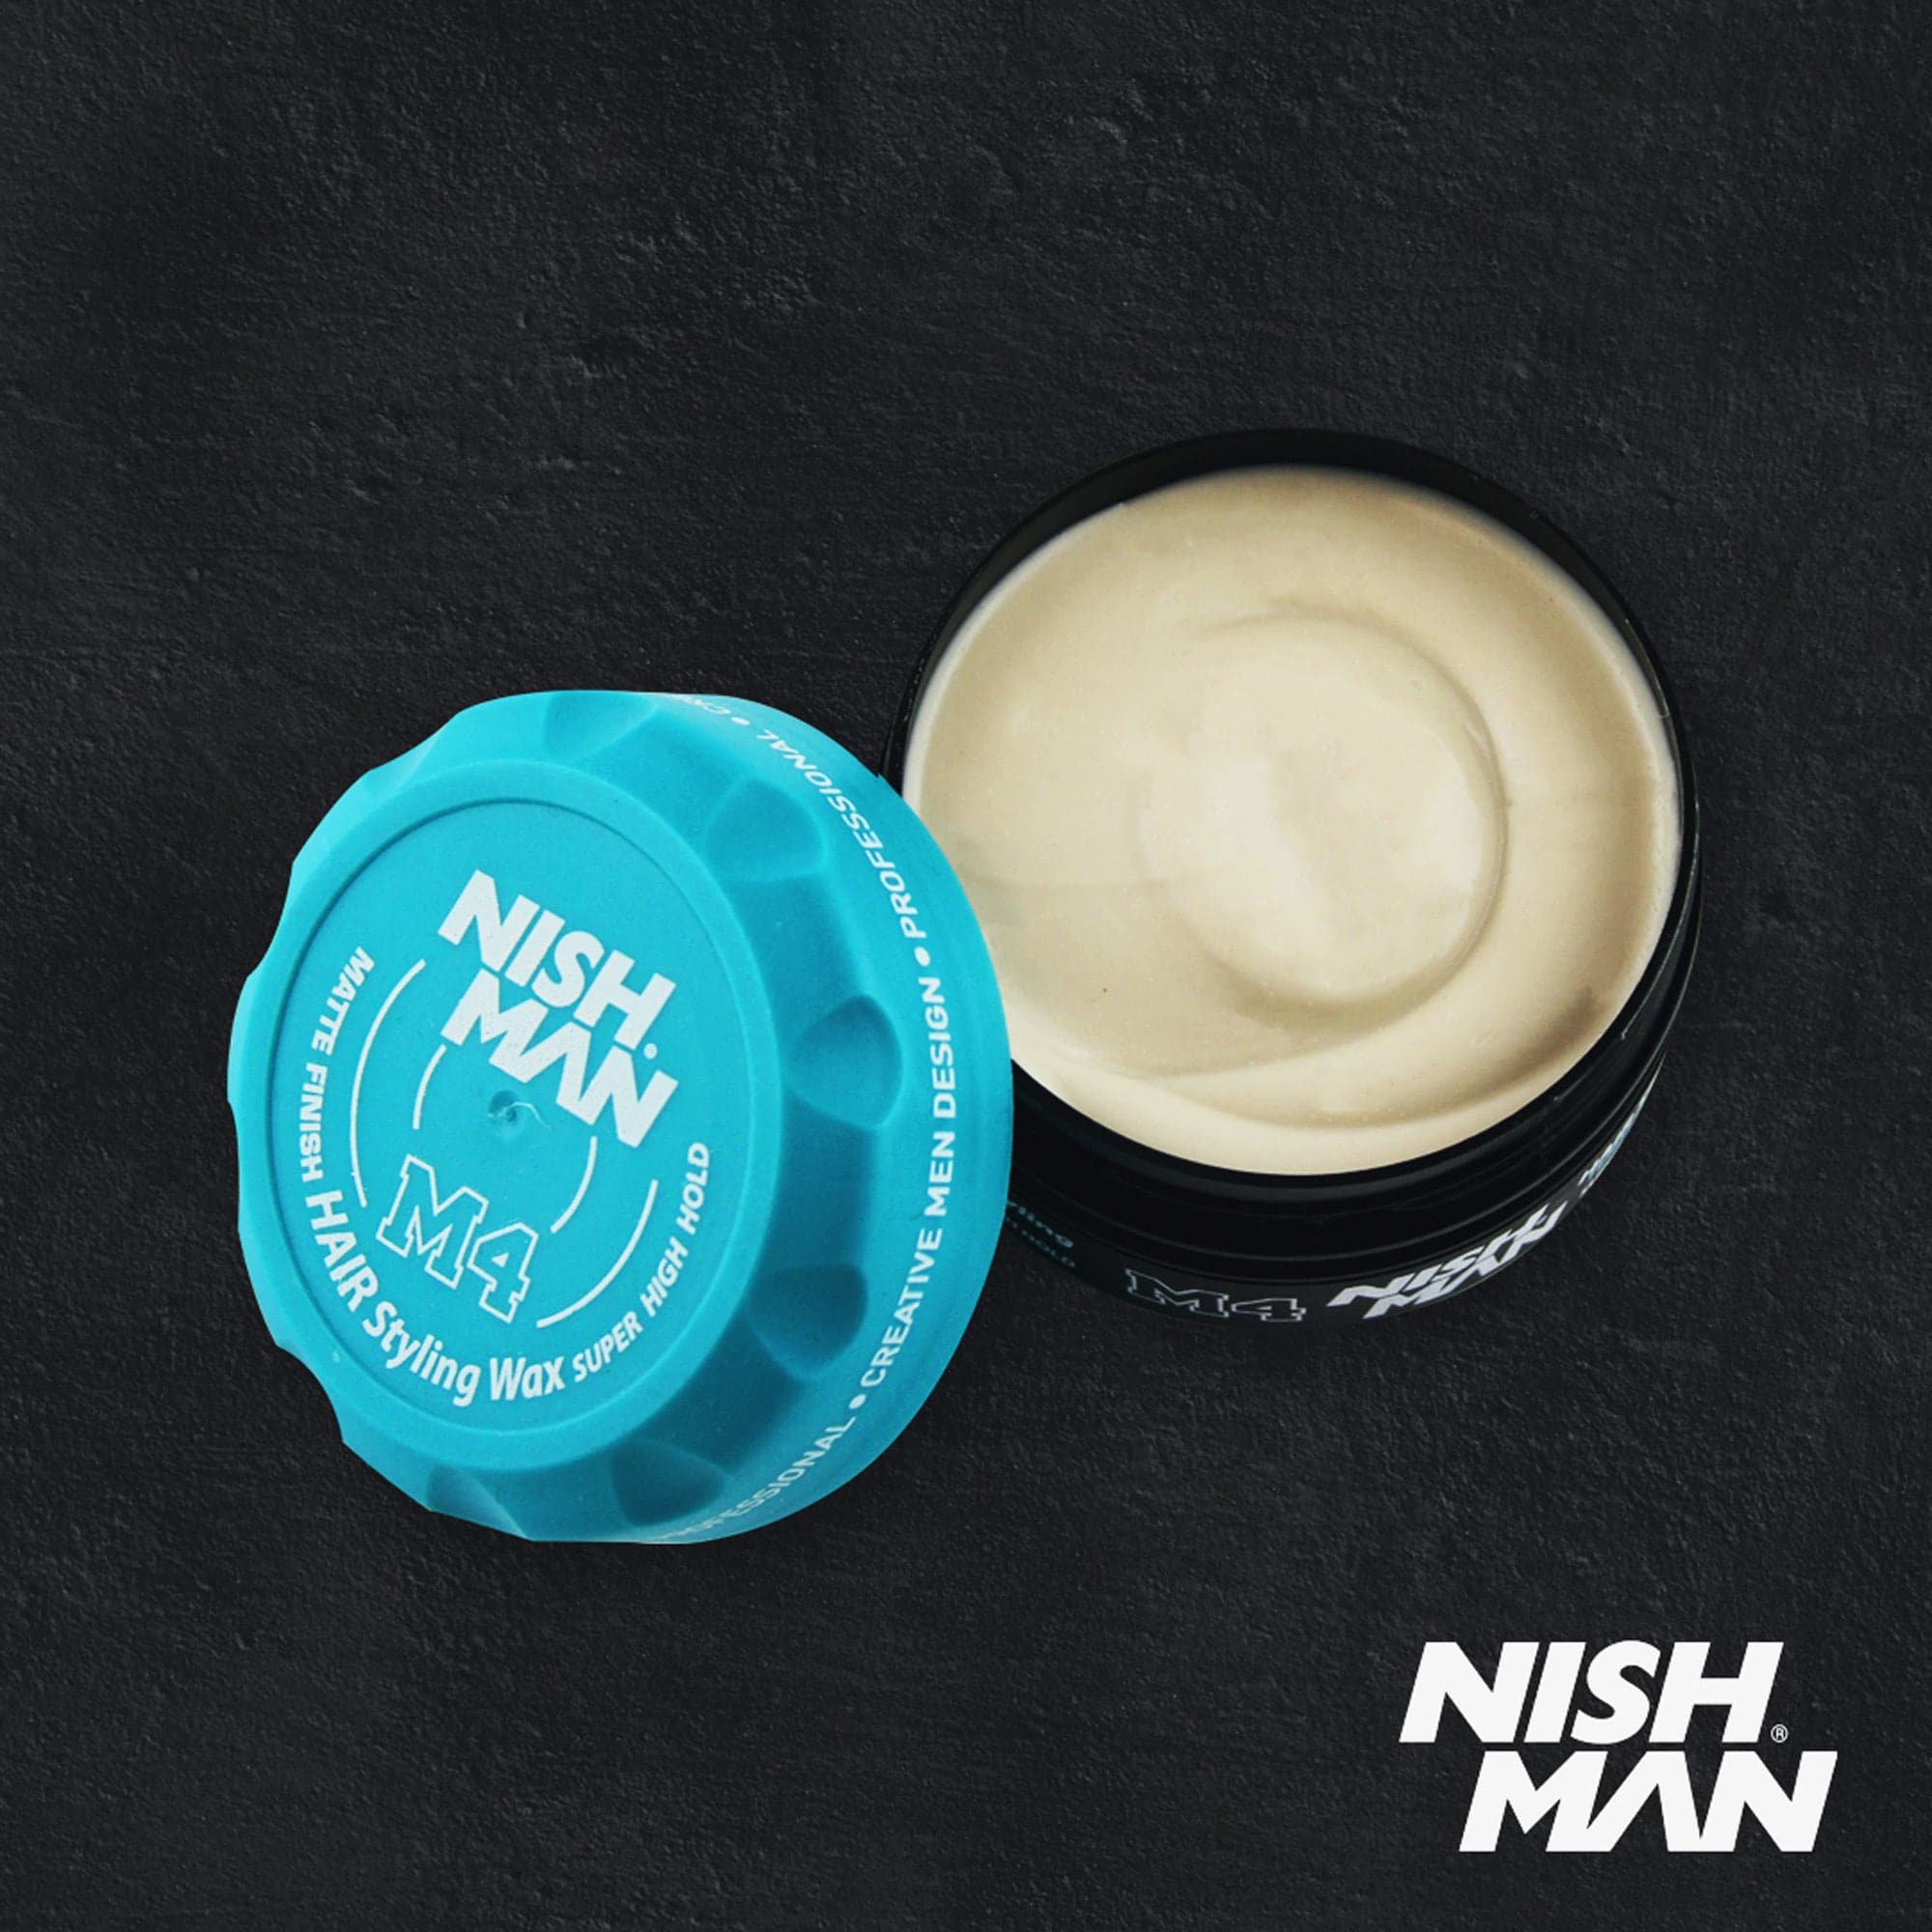 Nishman - Hair Styling Wax M4 Matte Finish Super High Hold 100ml